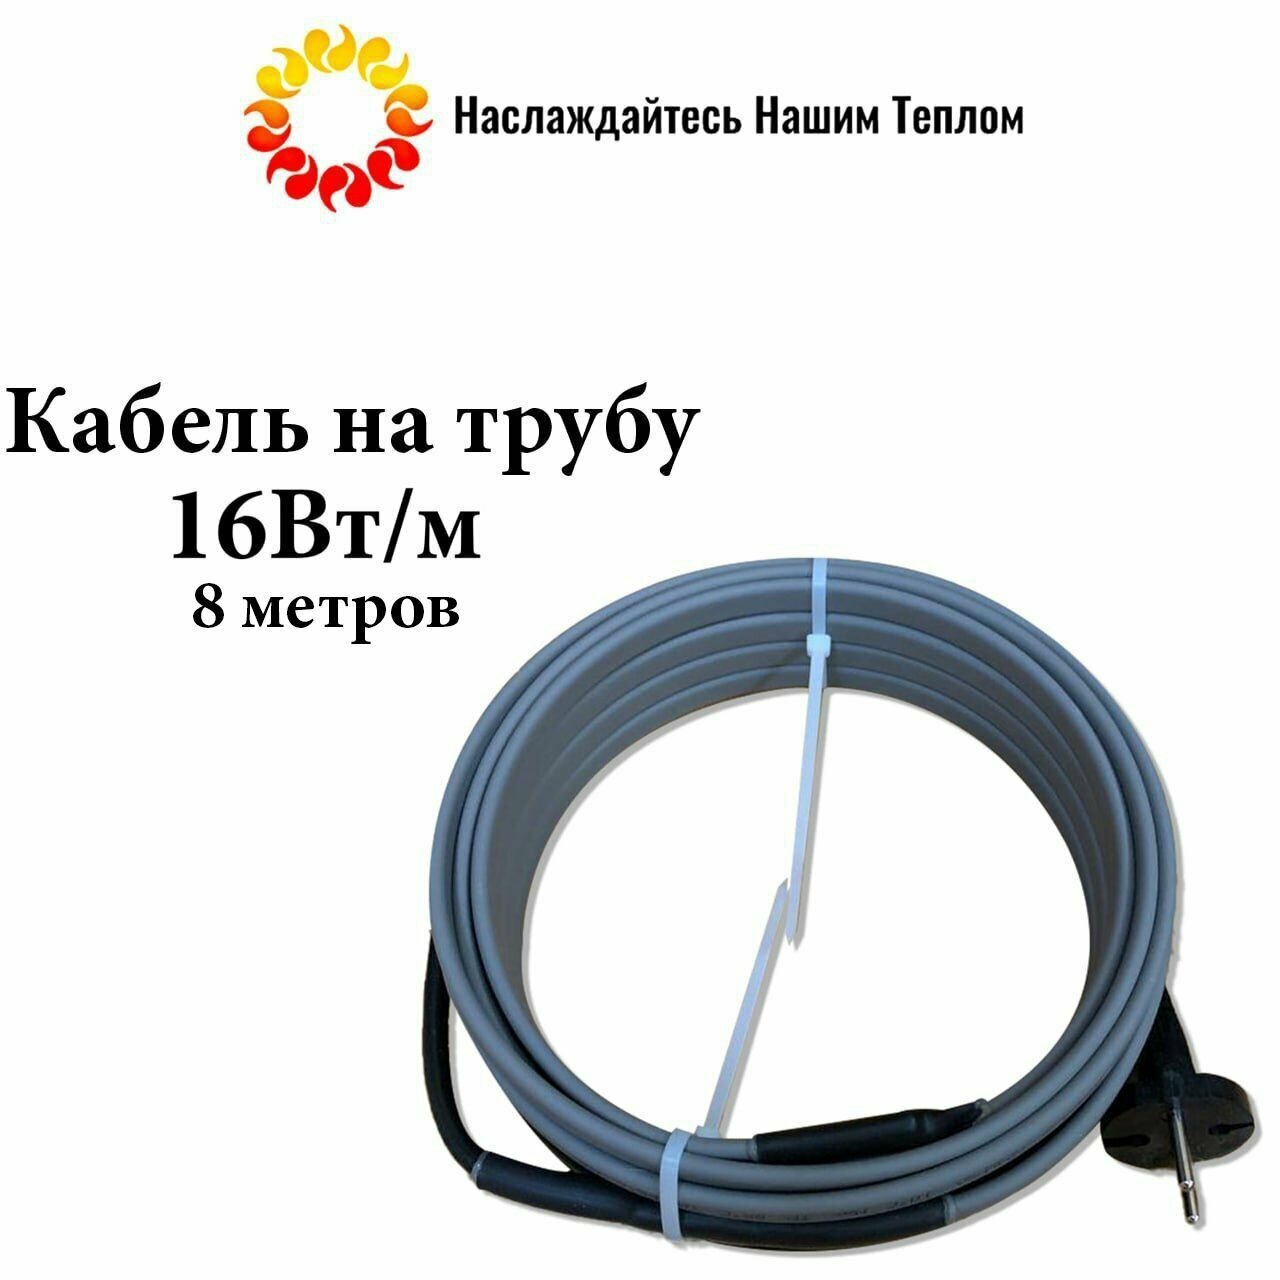 Саморегулирующийся греющий кабель на трубу (наружный) для водопровода и канализации, 16 Вт/м, длина 8 метров